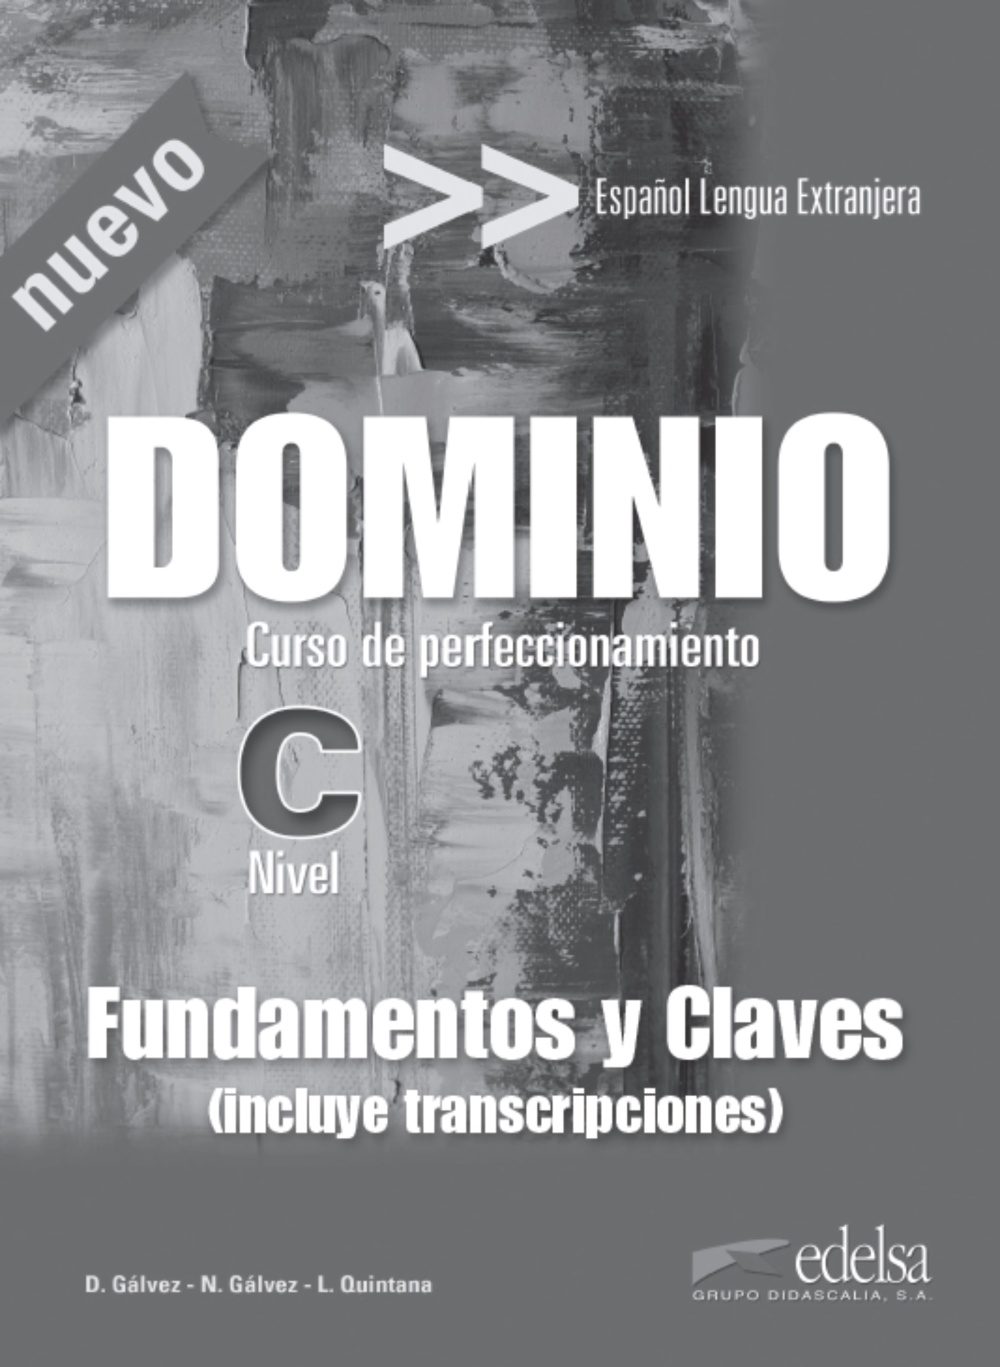 Dominio Fundamentos y Claves / Ответы